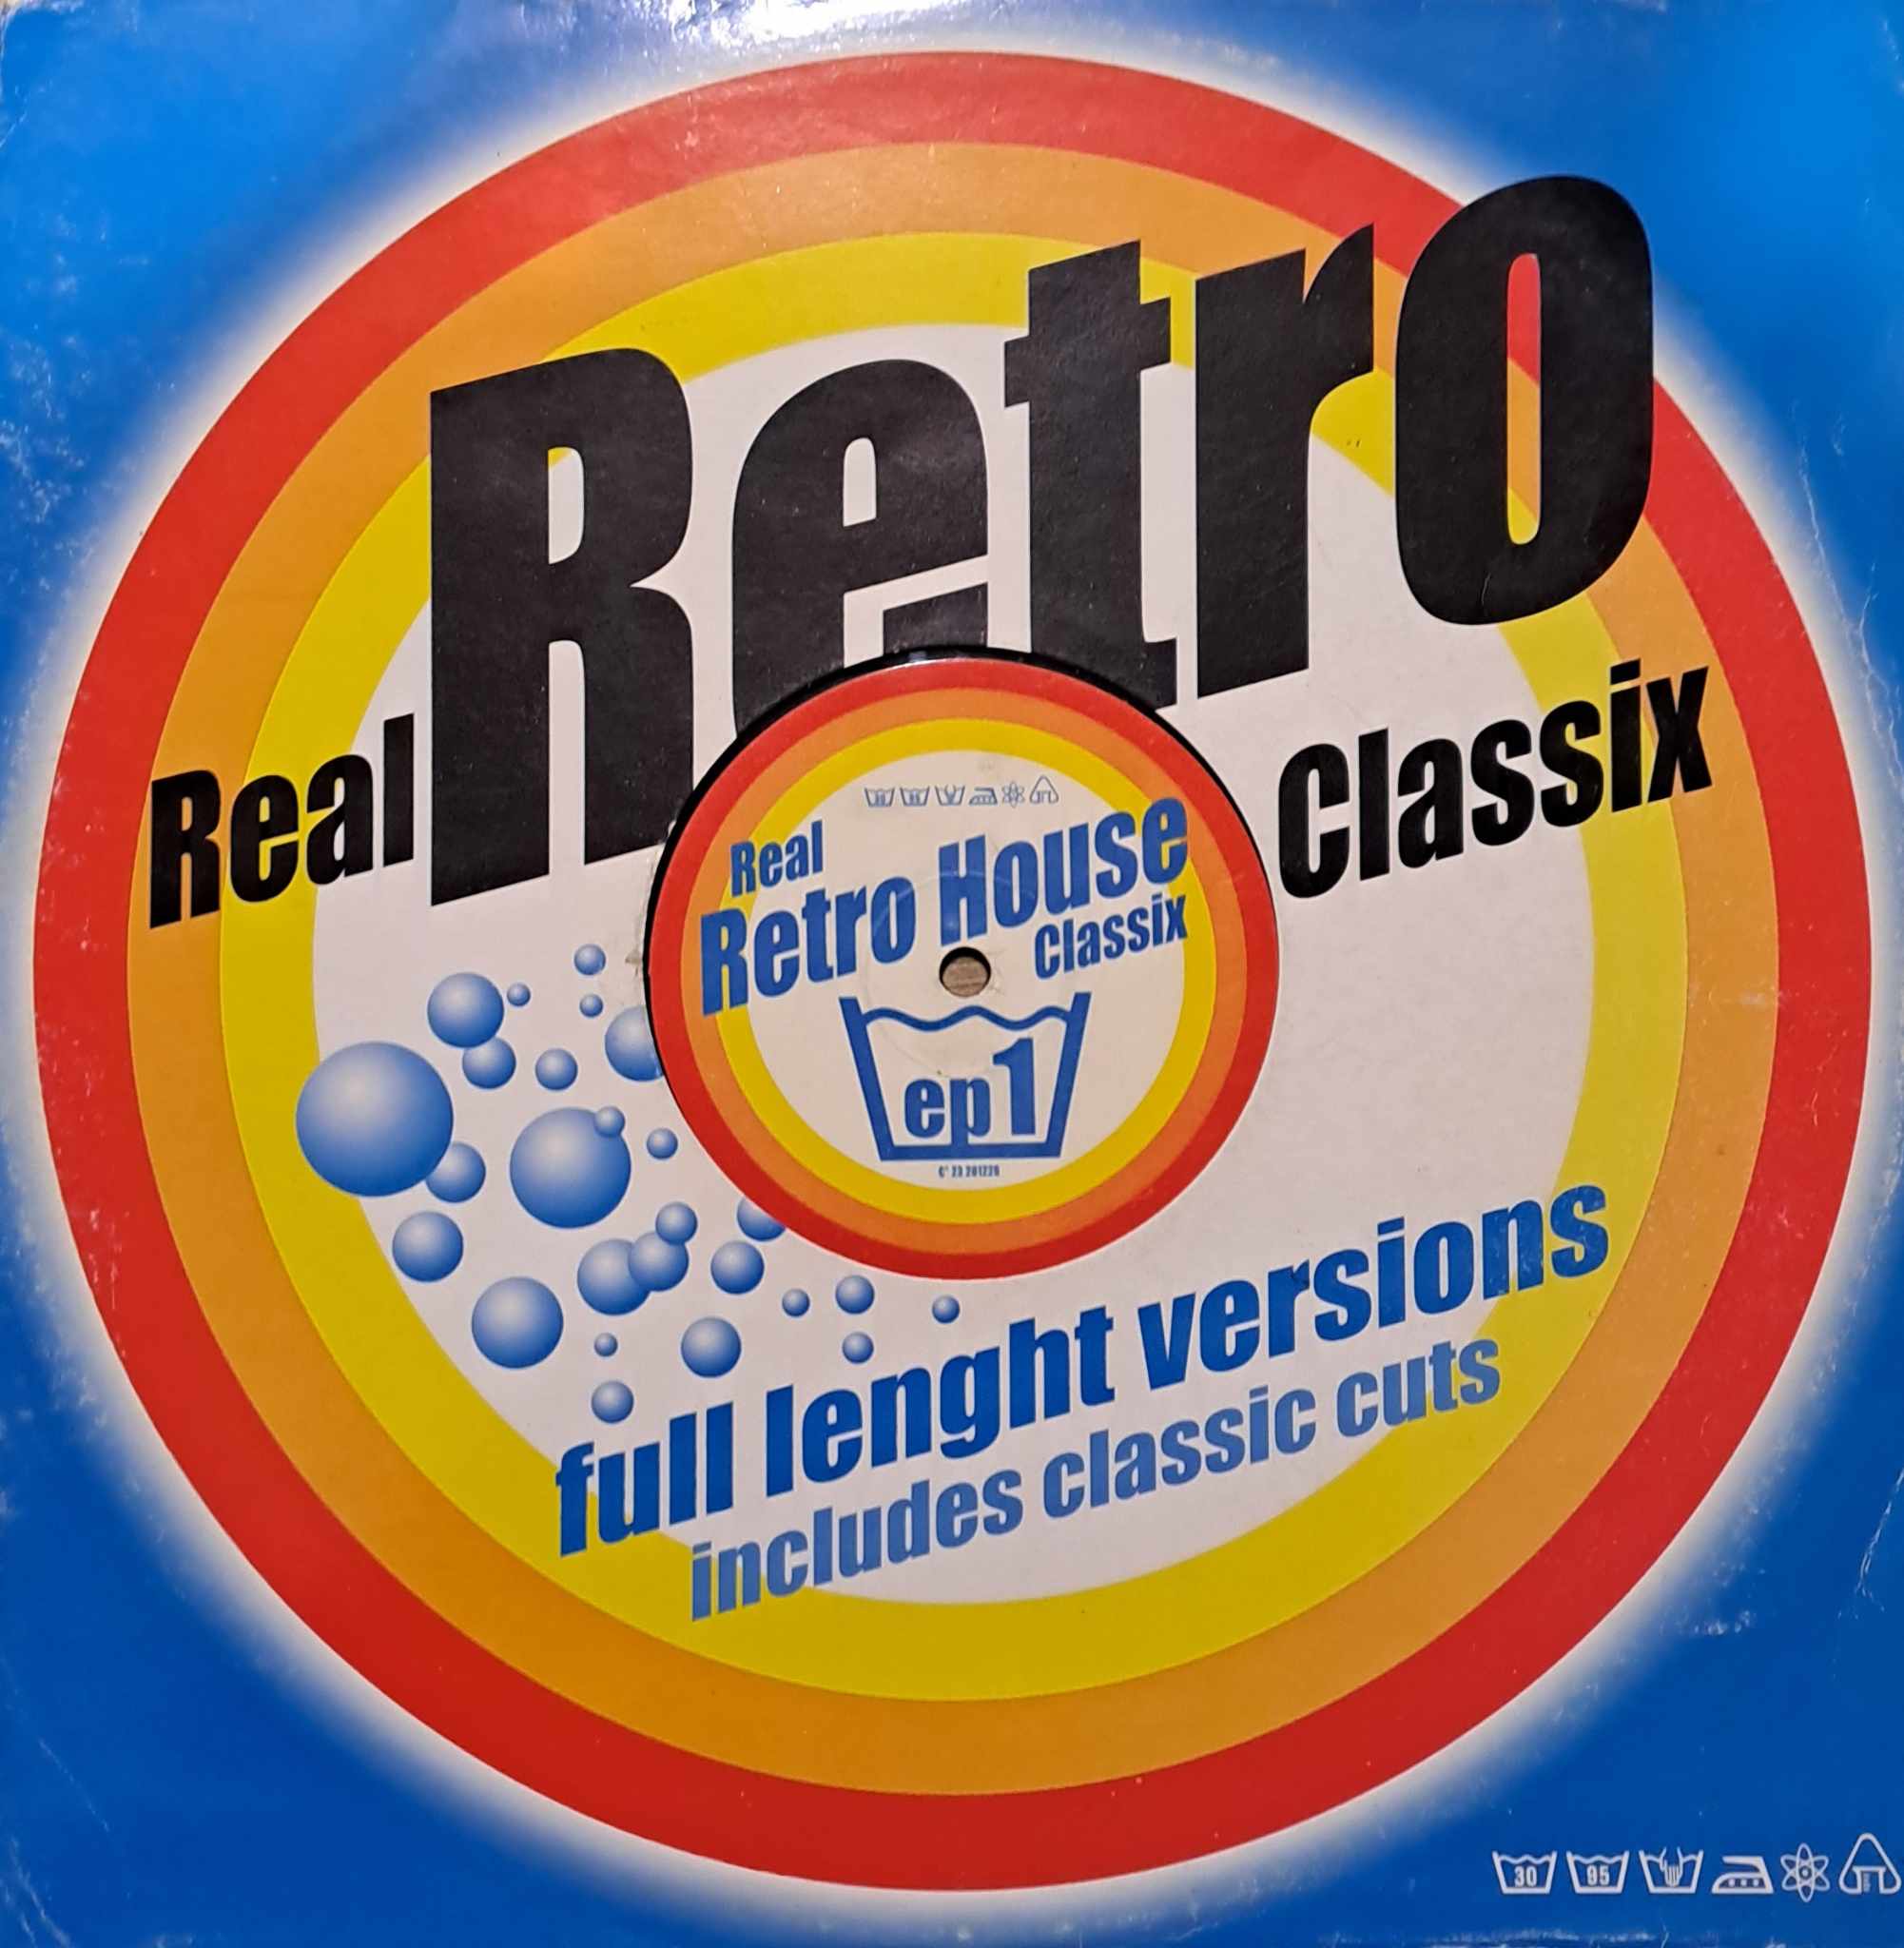 Real Retro House Classix EP 1 - vinyle acid